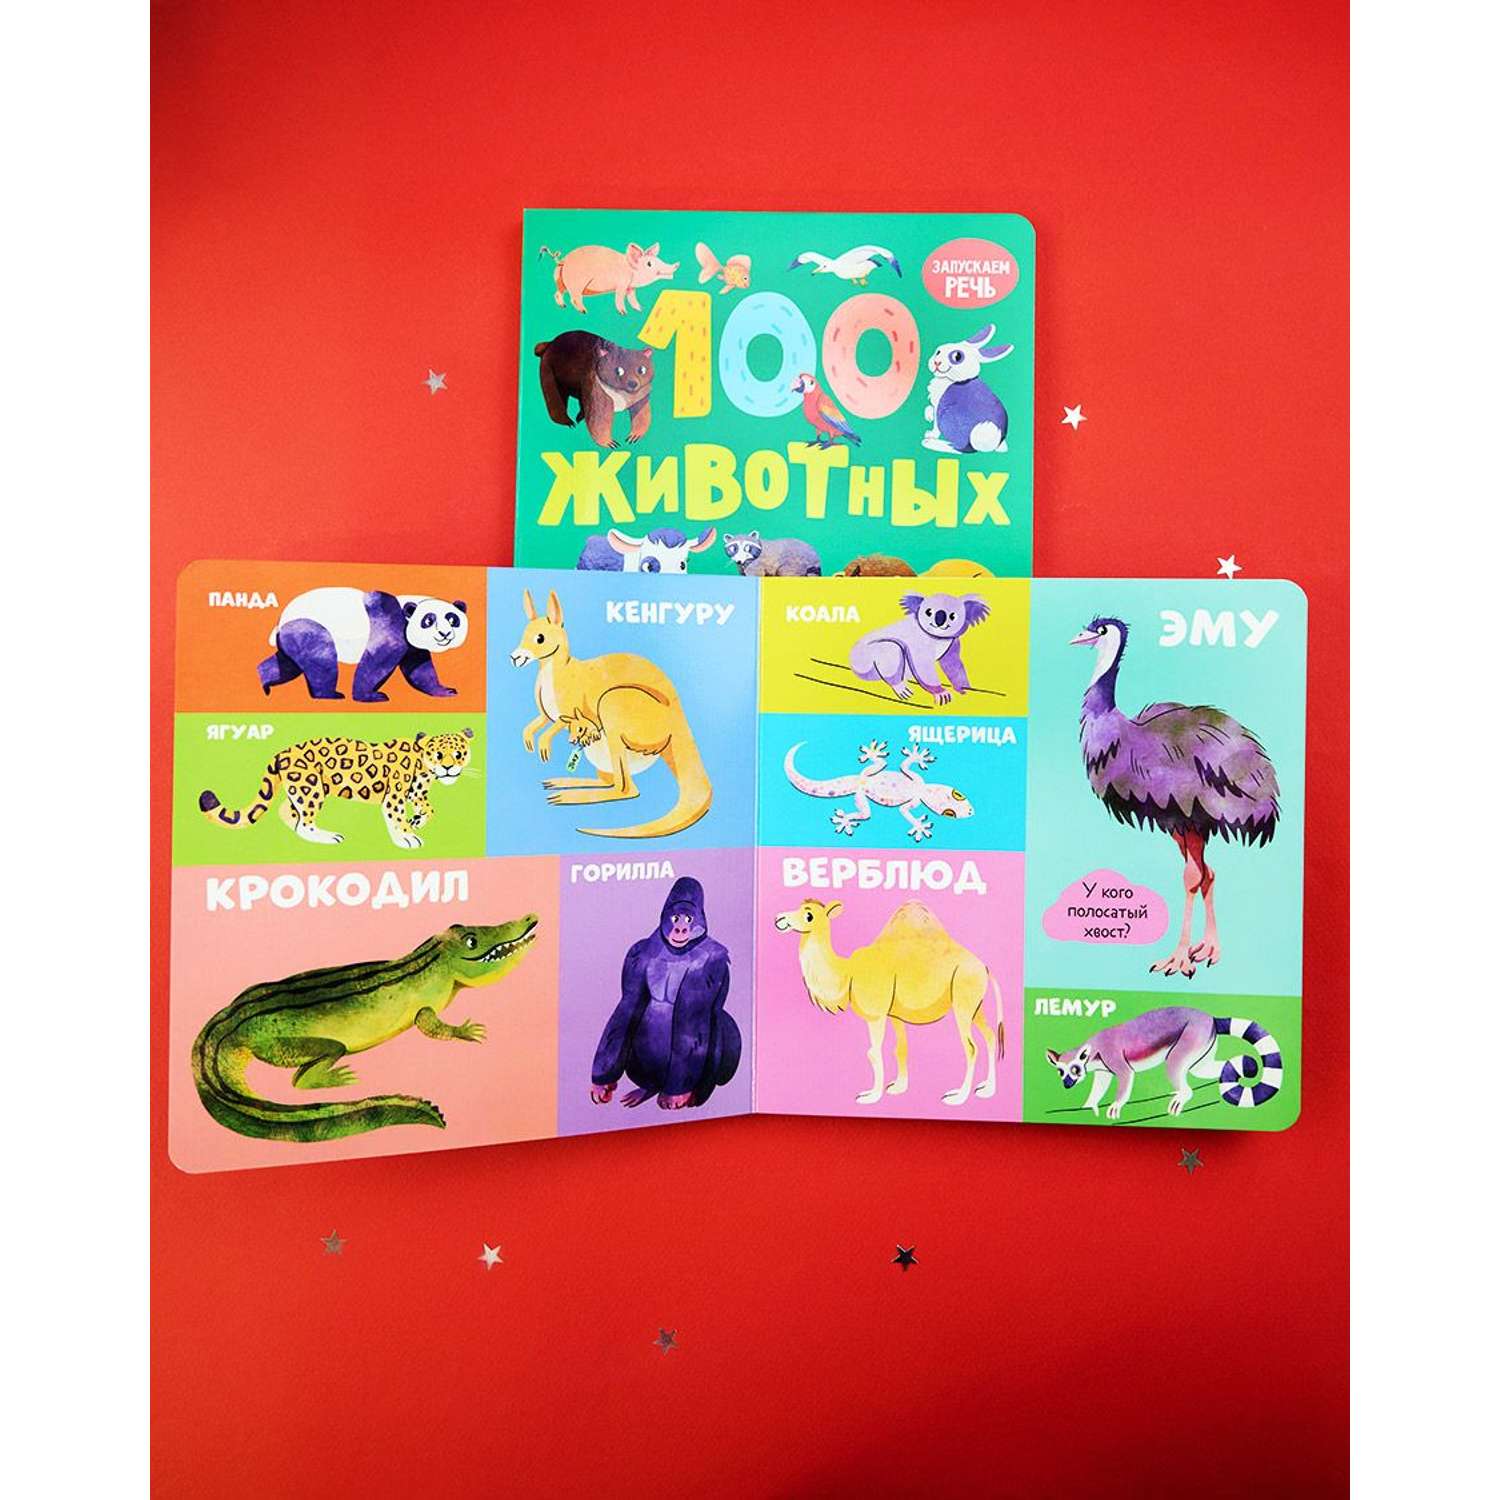 Книга Clever Издательство Книжки-картонки. 100 животных - фото 4